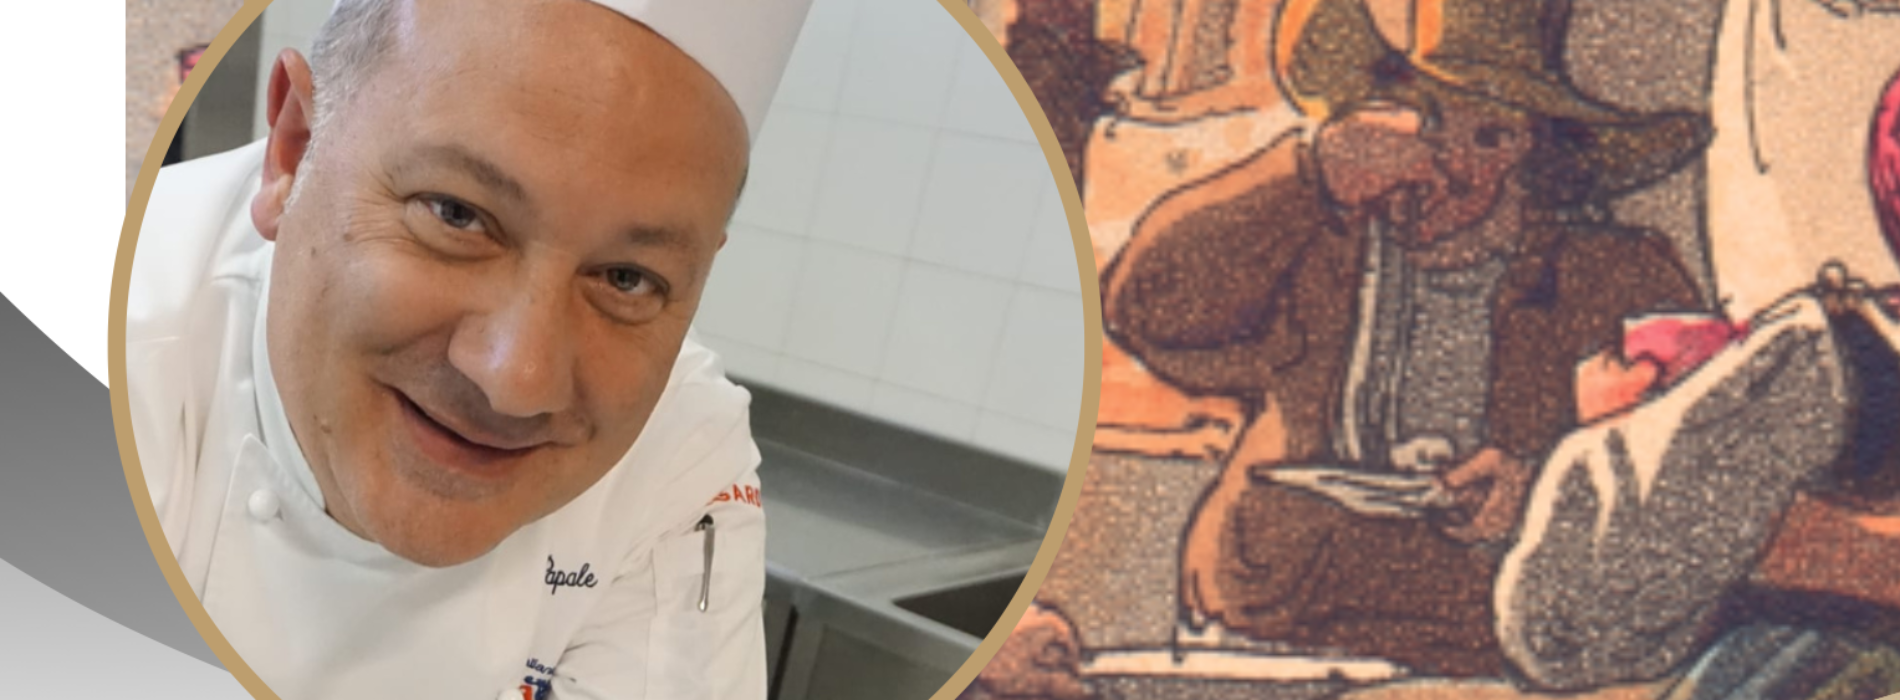 La Gastronomia in Campania, il libro dello chef Papale